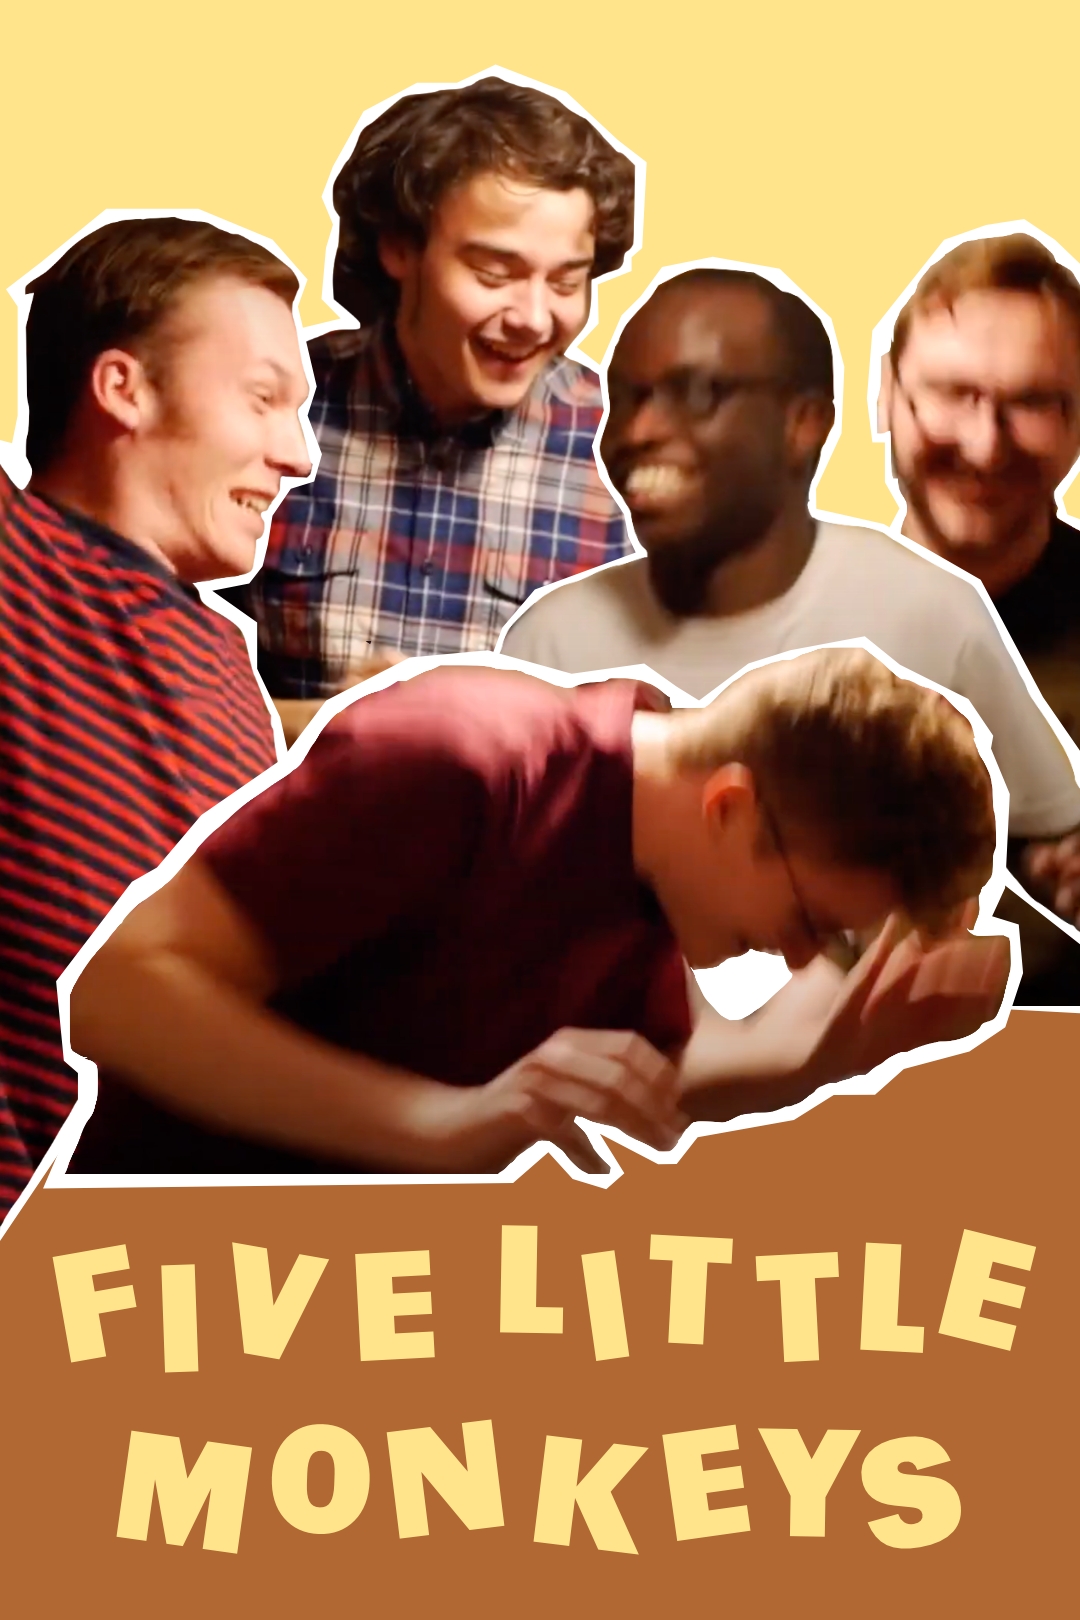 Poster for the film "Five Little Monkeys"